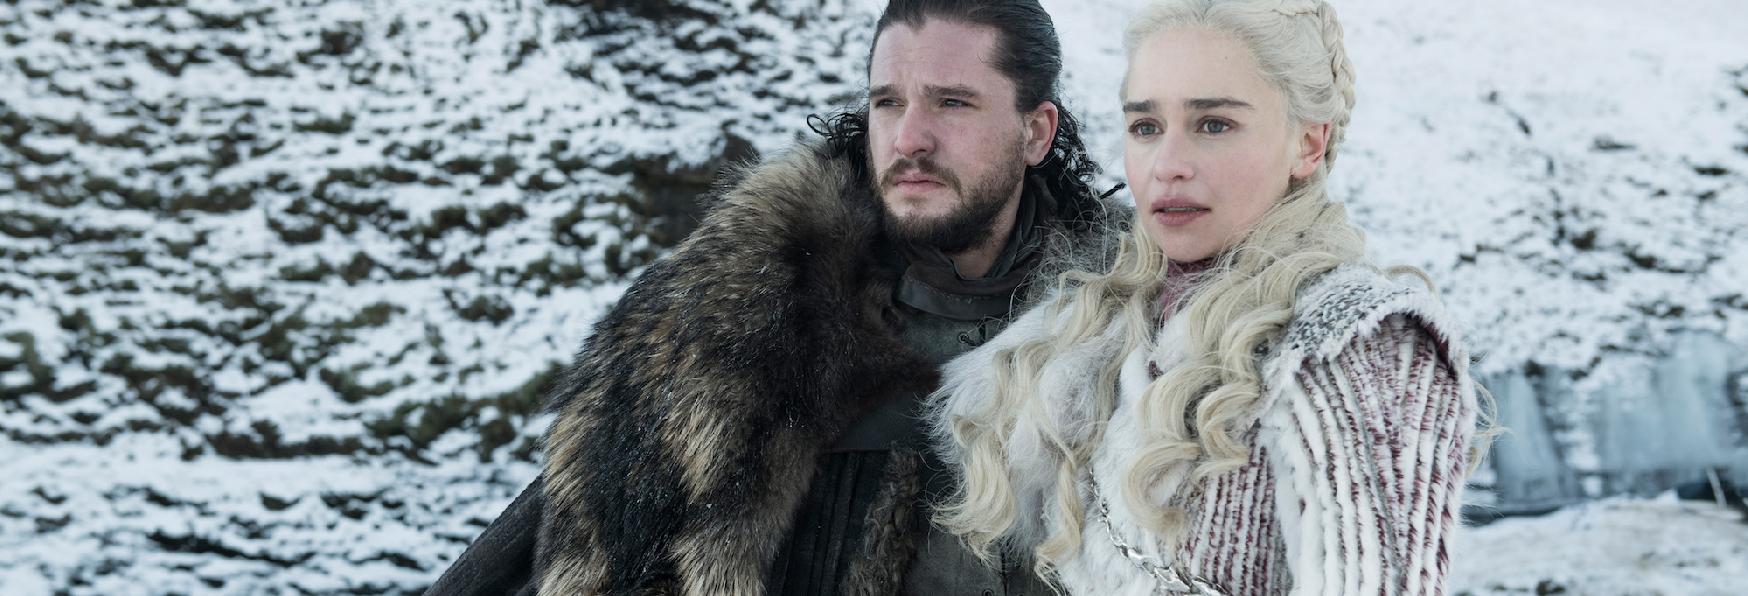 Game of Thrones 8: Emilia Clarke e Kit Harington parlano del Futuro dei loro Personaggi